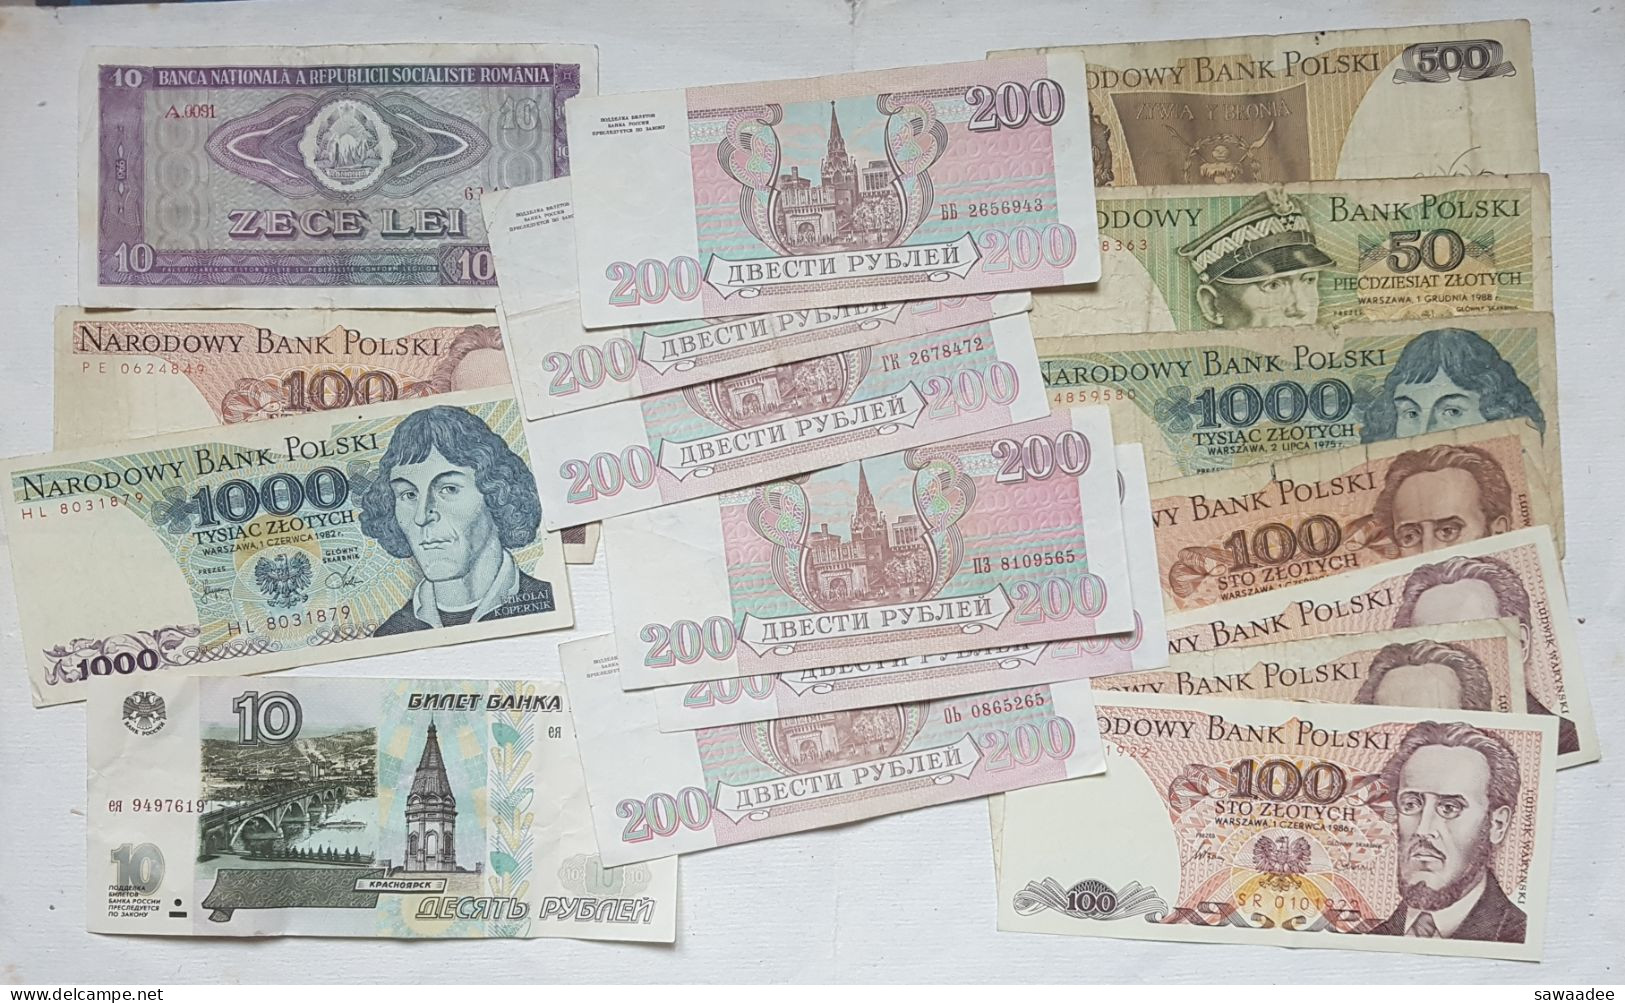 BILLETS EUROPE DE L'EST - VRAC LOT DE 17 BILLETS -  RUSSIE, POLOGNE, ROUMANIE - A VOIR - Lots & Kiloware - Banknotes